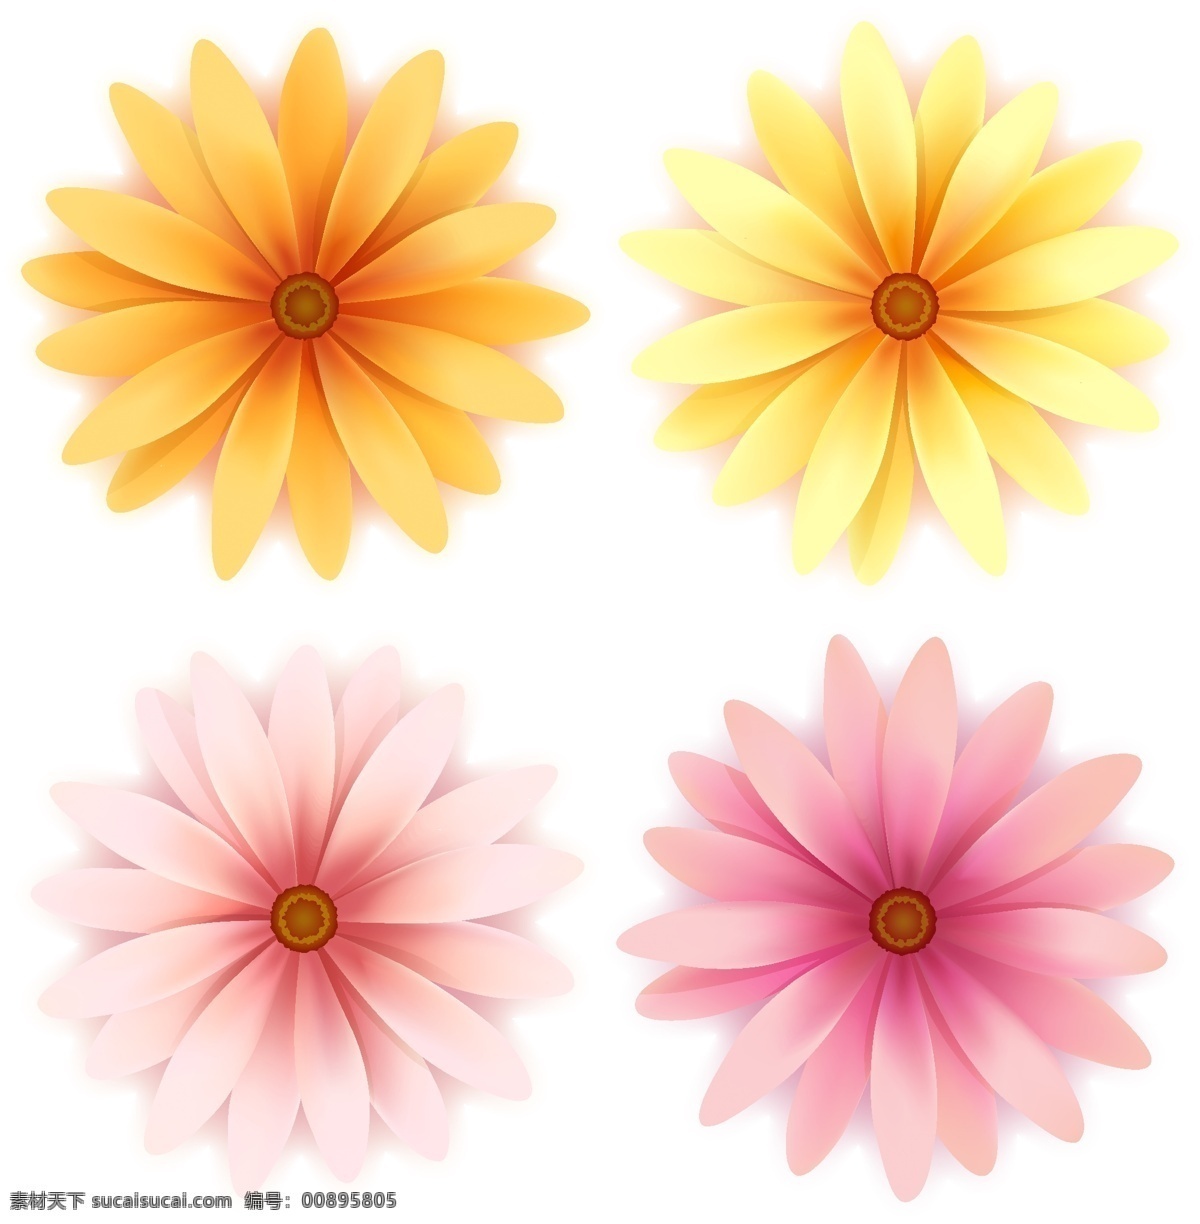 四 色 漂亮 花朵 花卉 矢量素材 小花朵 矢量图 其他矢量图